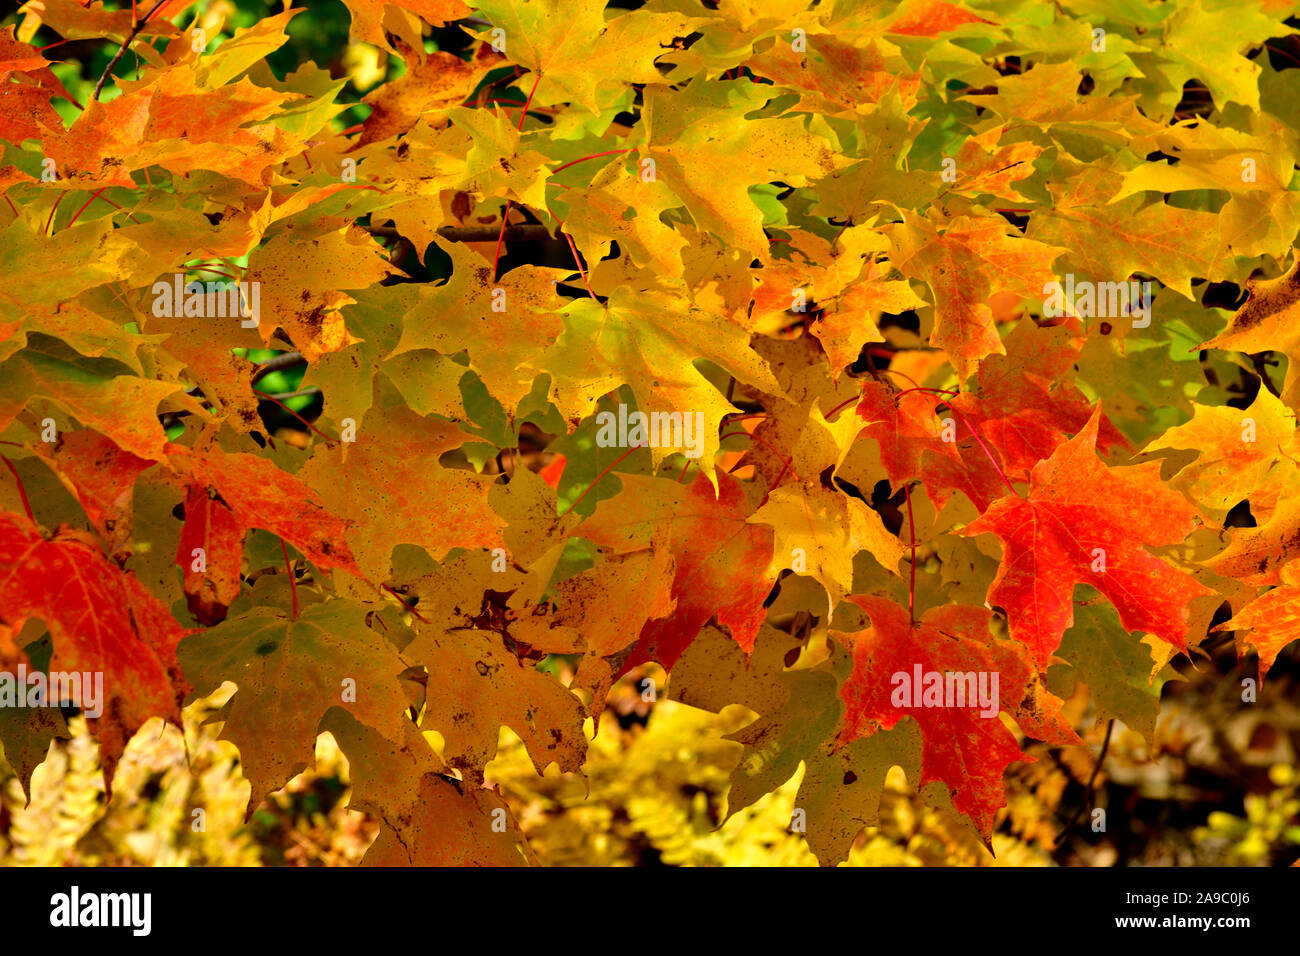 Eine Landschaft Bild von Ahorn Blätter die hellen bunten Farben eines maritimen Herbst. Stockfoto